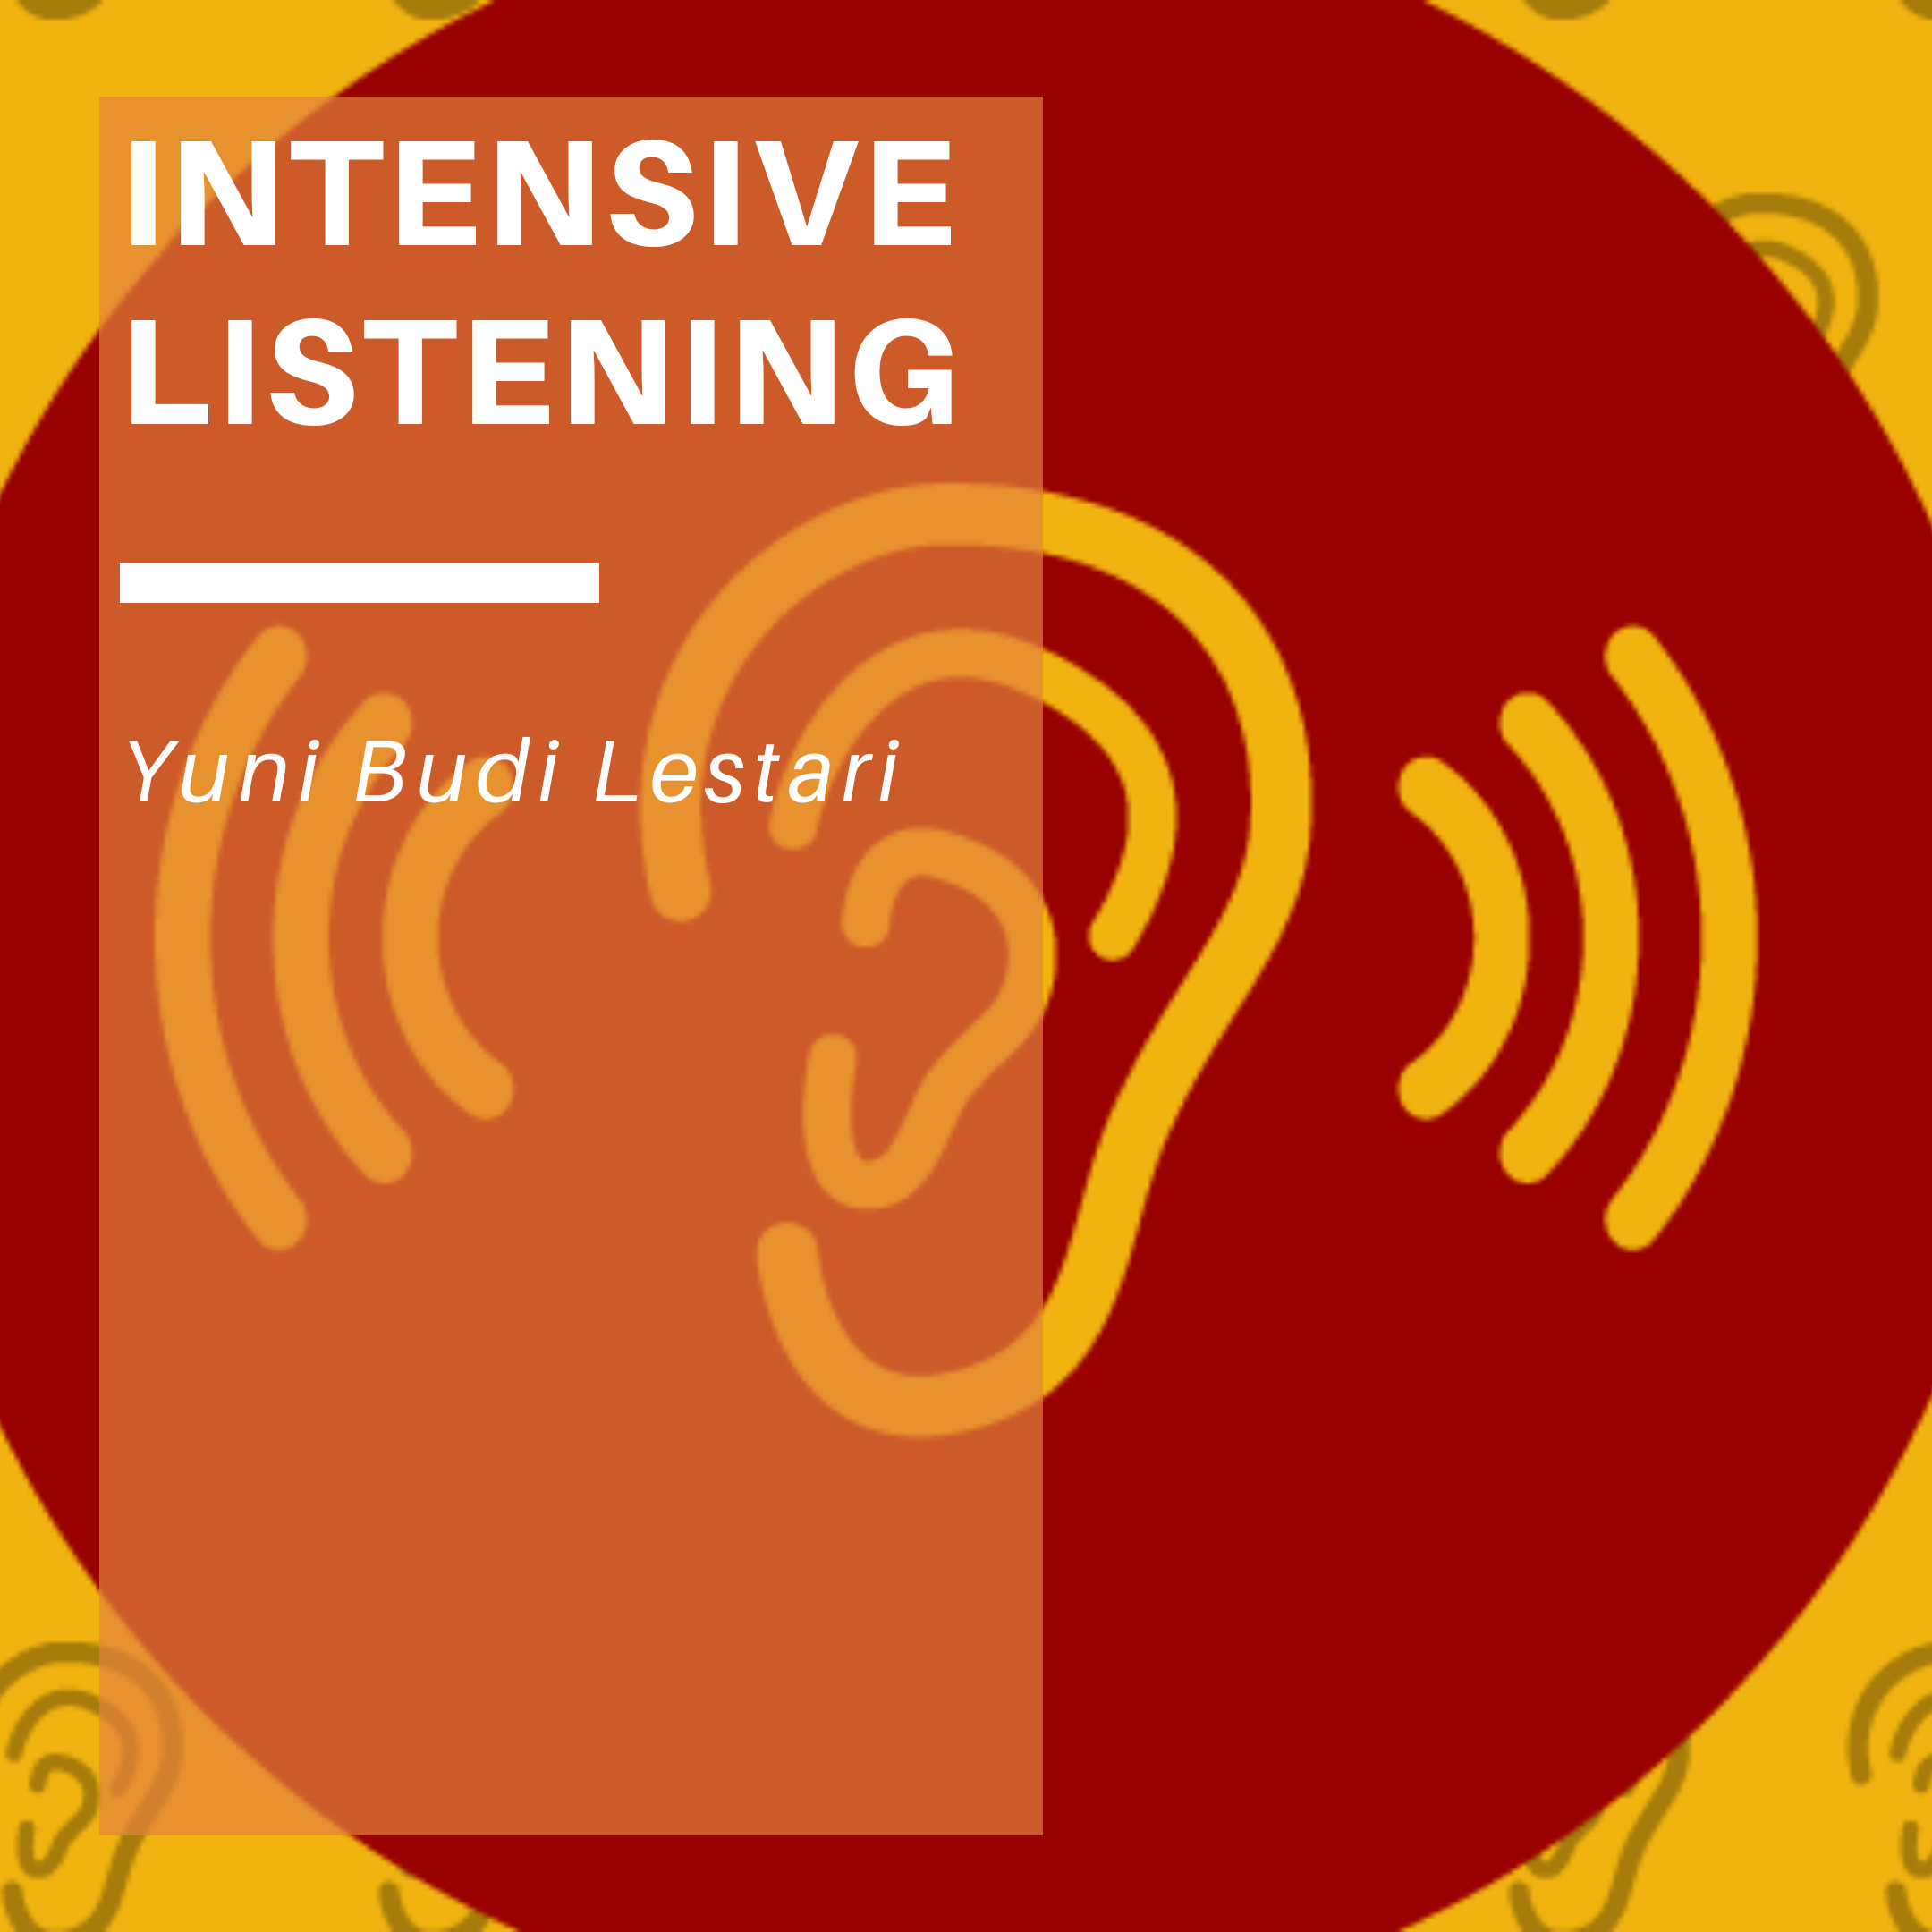 IB INTENSIVE LISTENING (YBL)